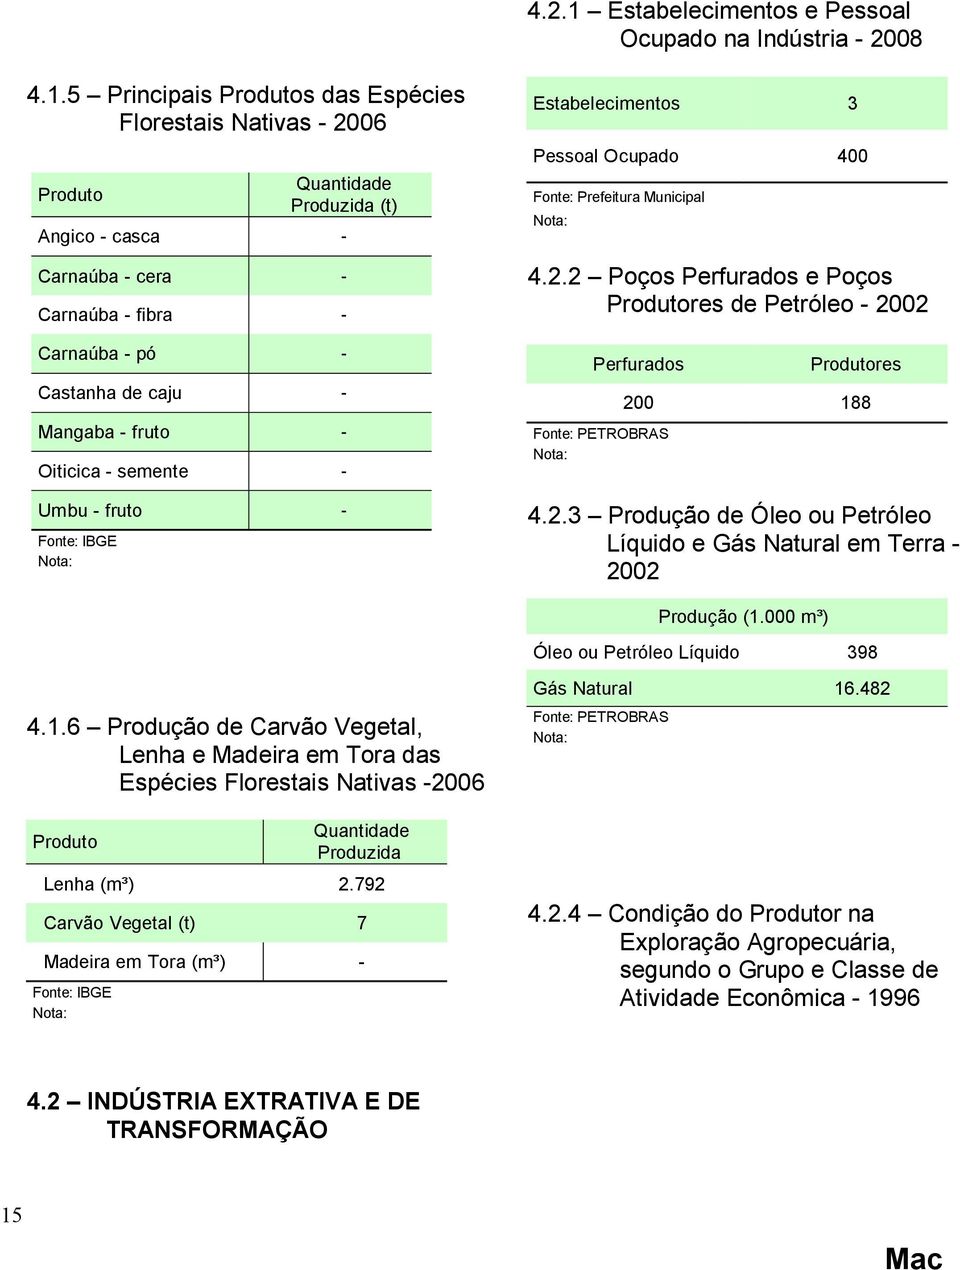 5 Principais Produtos das Espécies Florestais Nativas - 2006 Produto Quantidade Produzida (t) Angico - casca - Carnaúba - cera - Carnaúba - fibra - Carnaúba - pó - Castanha de caju - Mangaba - fruto